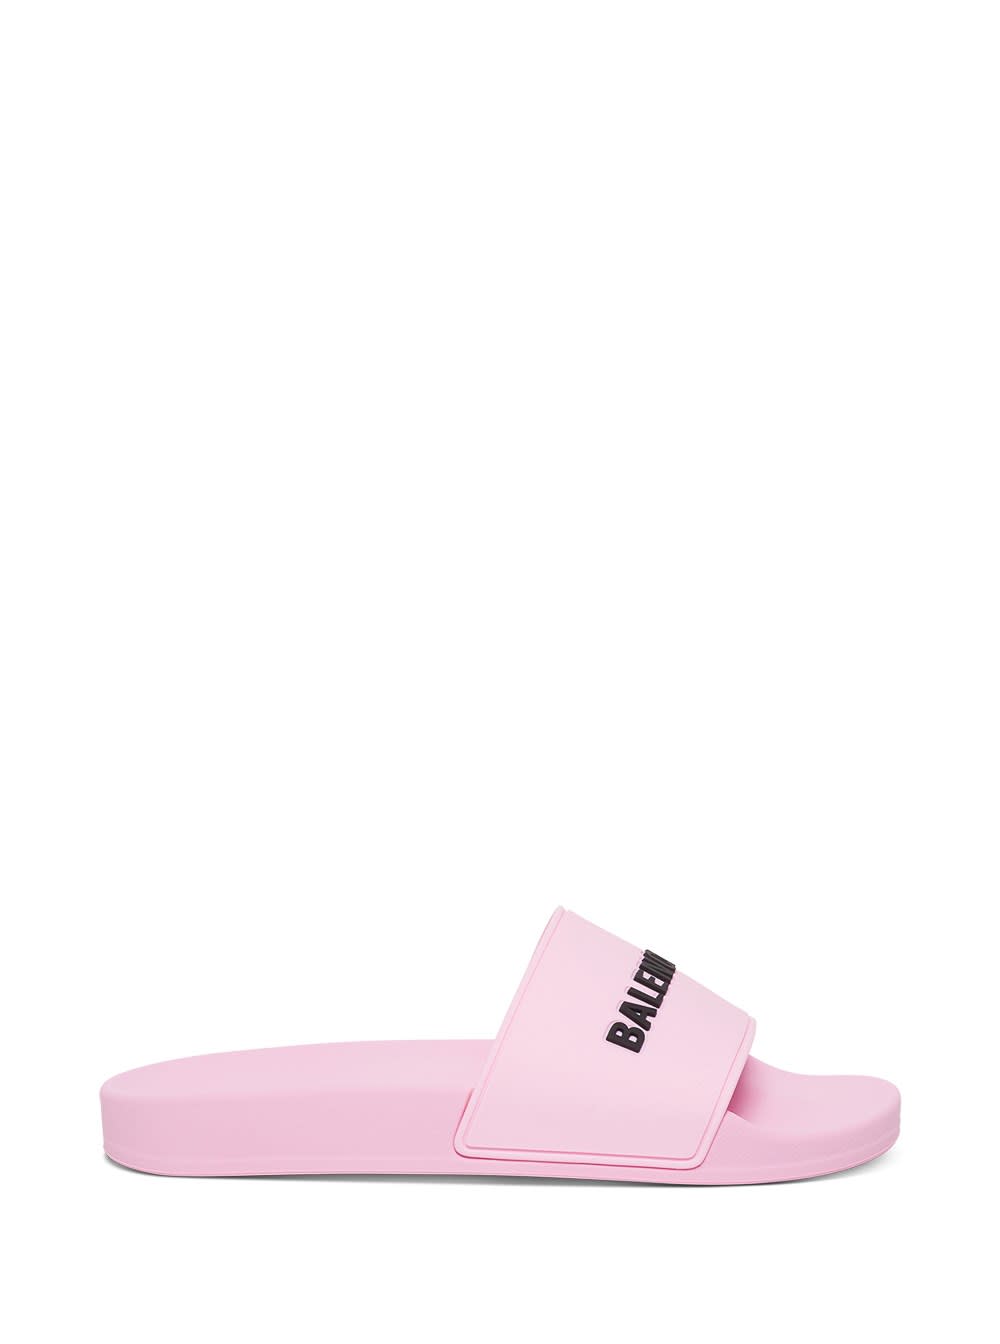 Balenciaga Rubber Slide Sandals With Logo